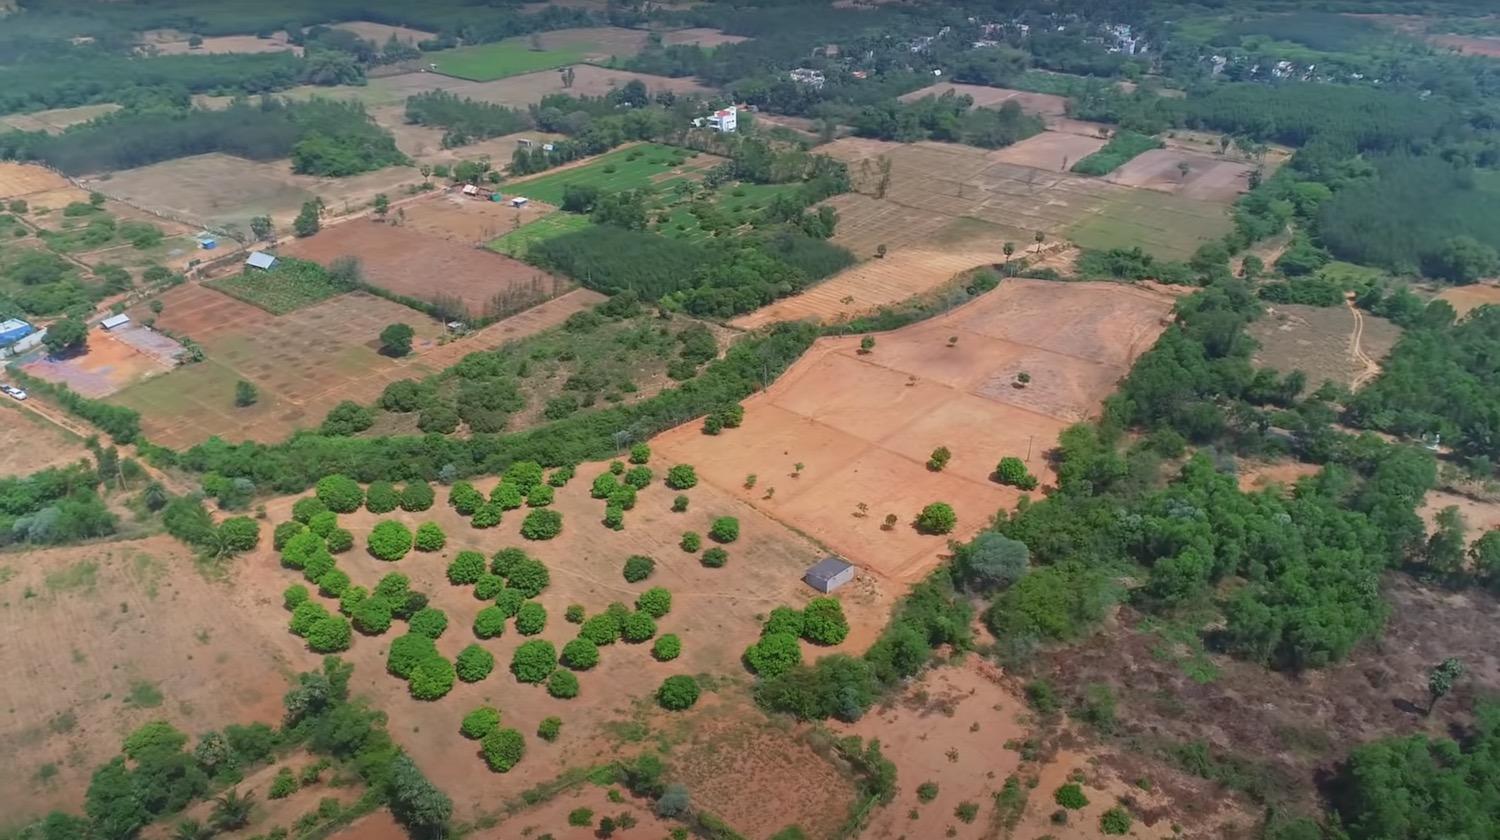 02 drone view side - Mango Farm Land near Auroville in Mathur